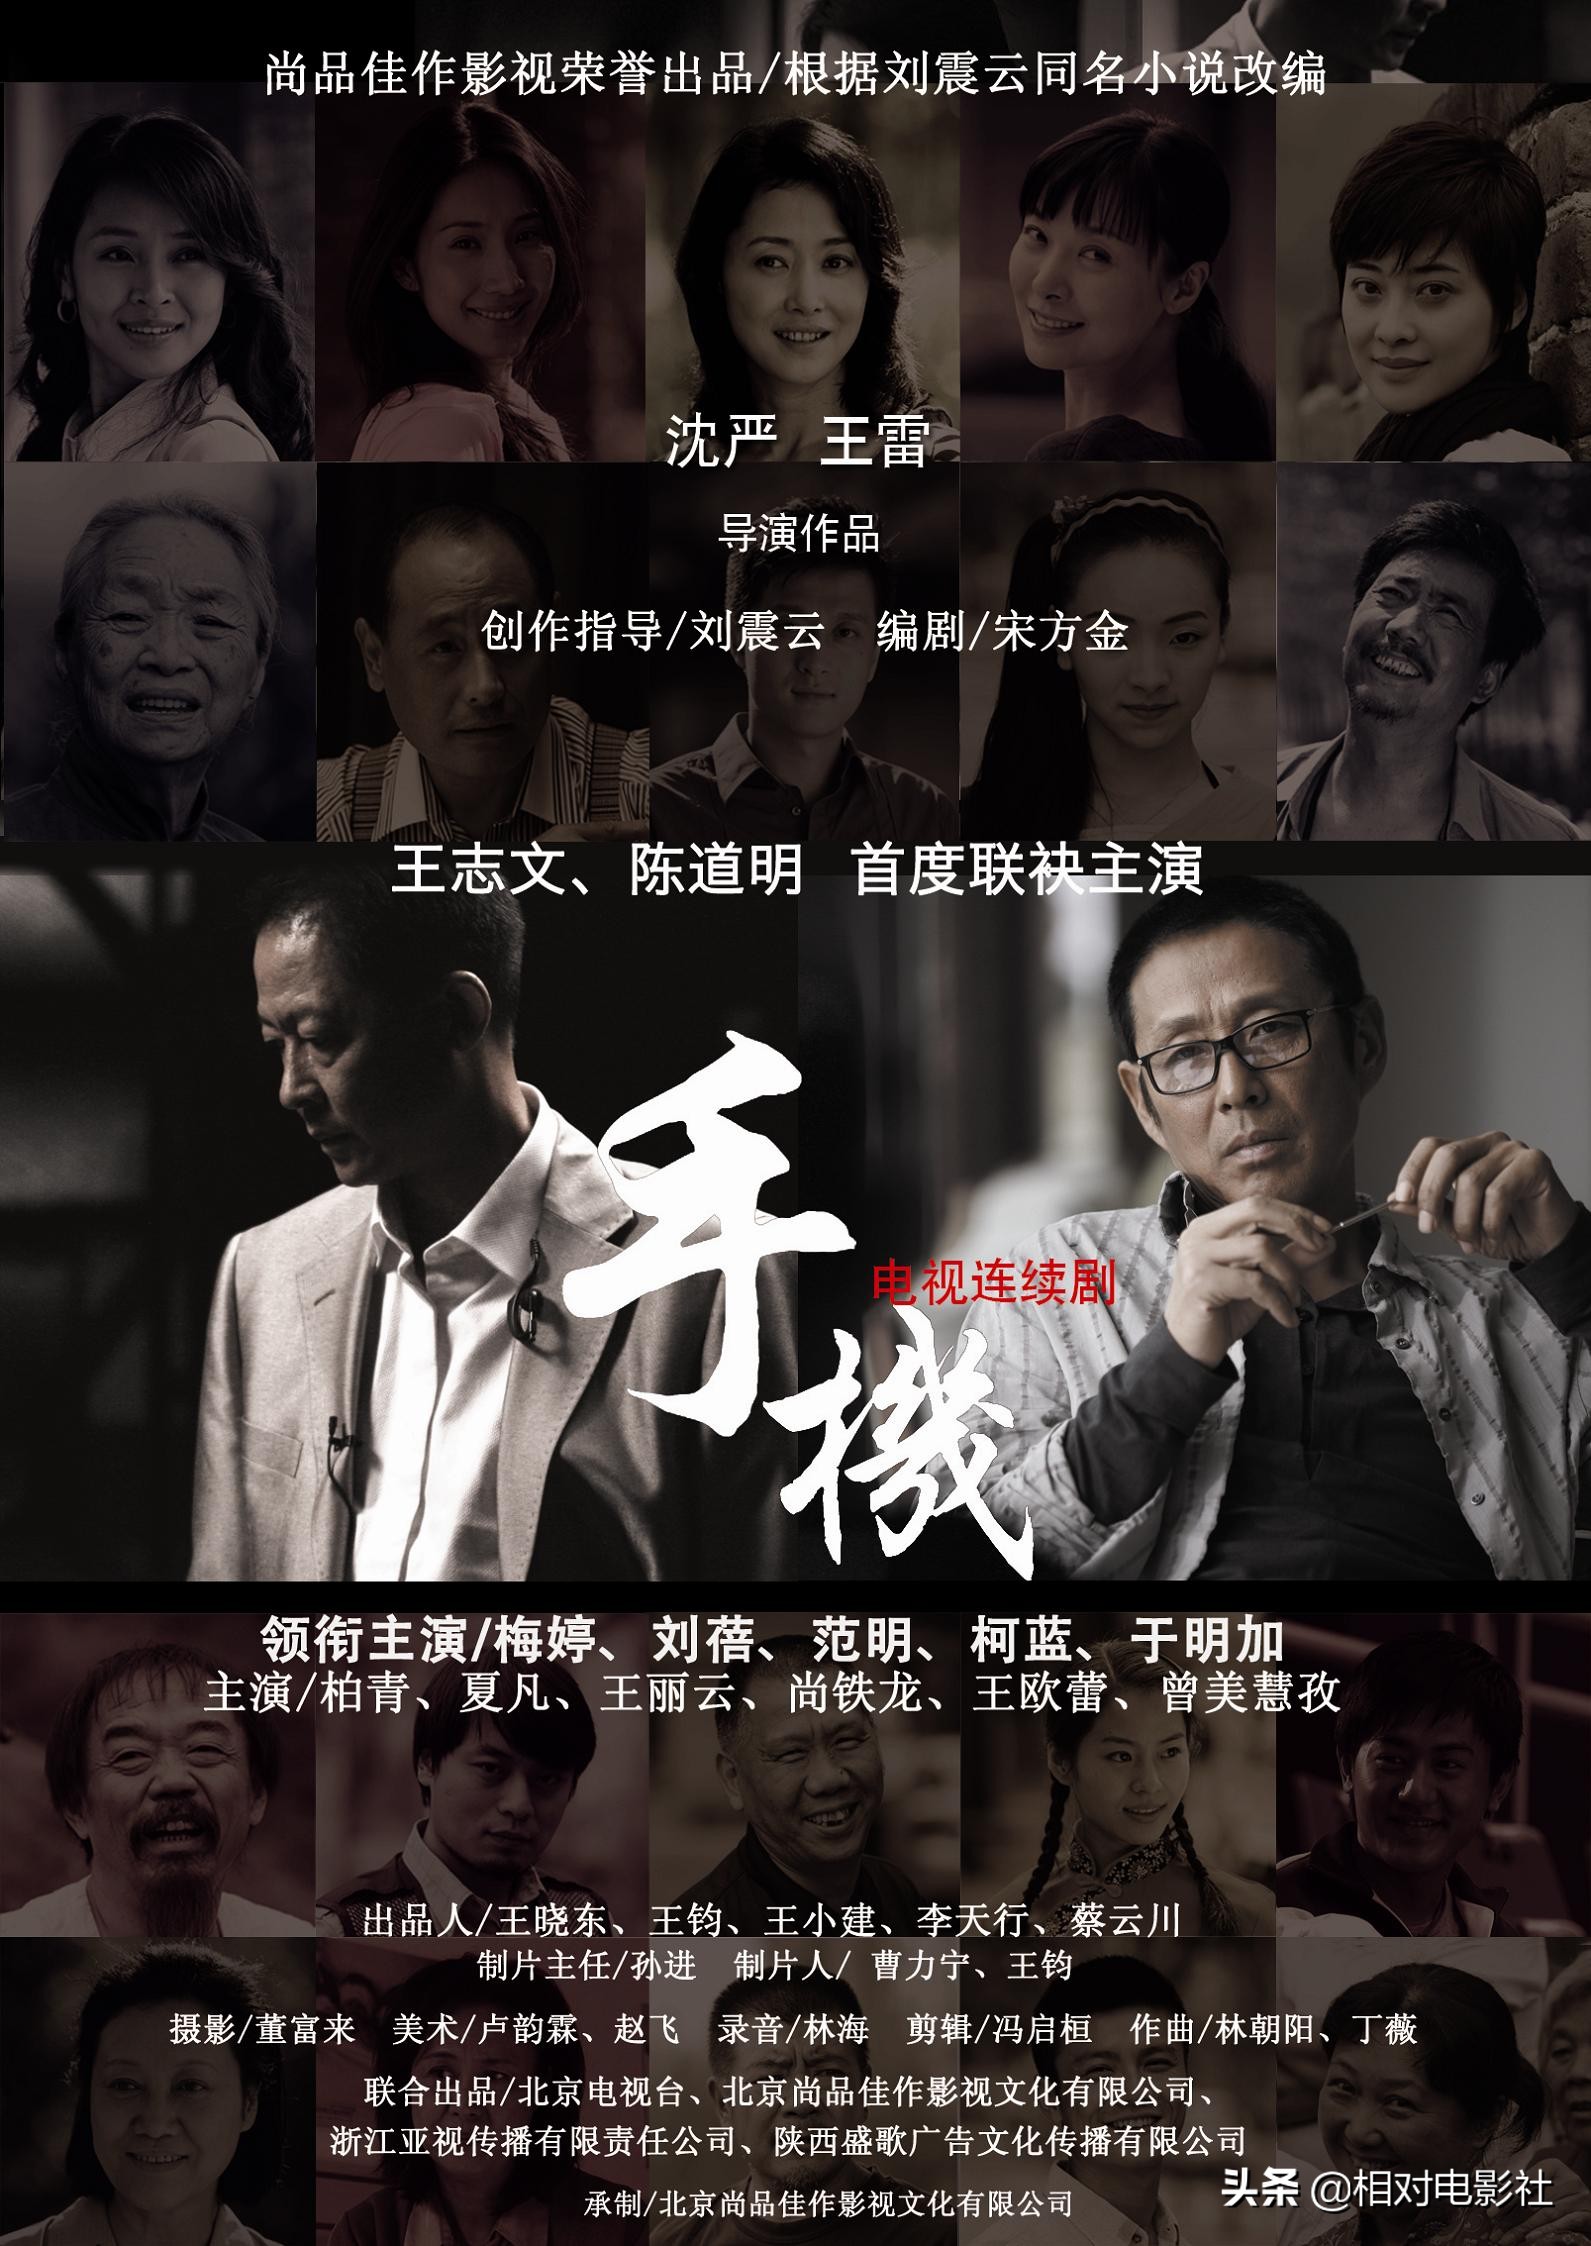 王志文评分zui高的6部剧集：《叛逆者》排第5，第一豆瓣高达9.3分